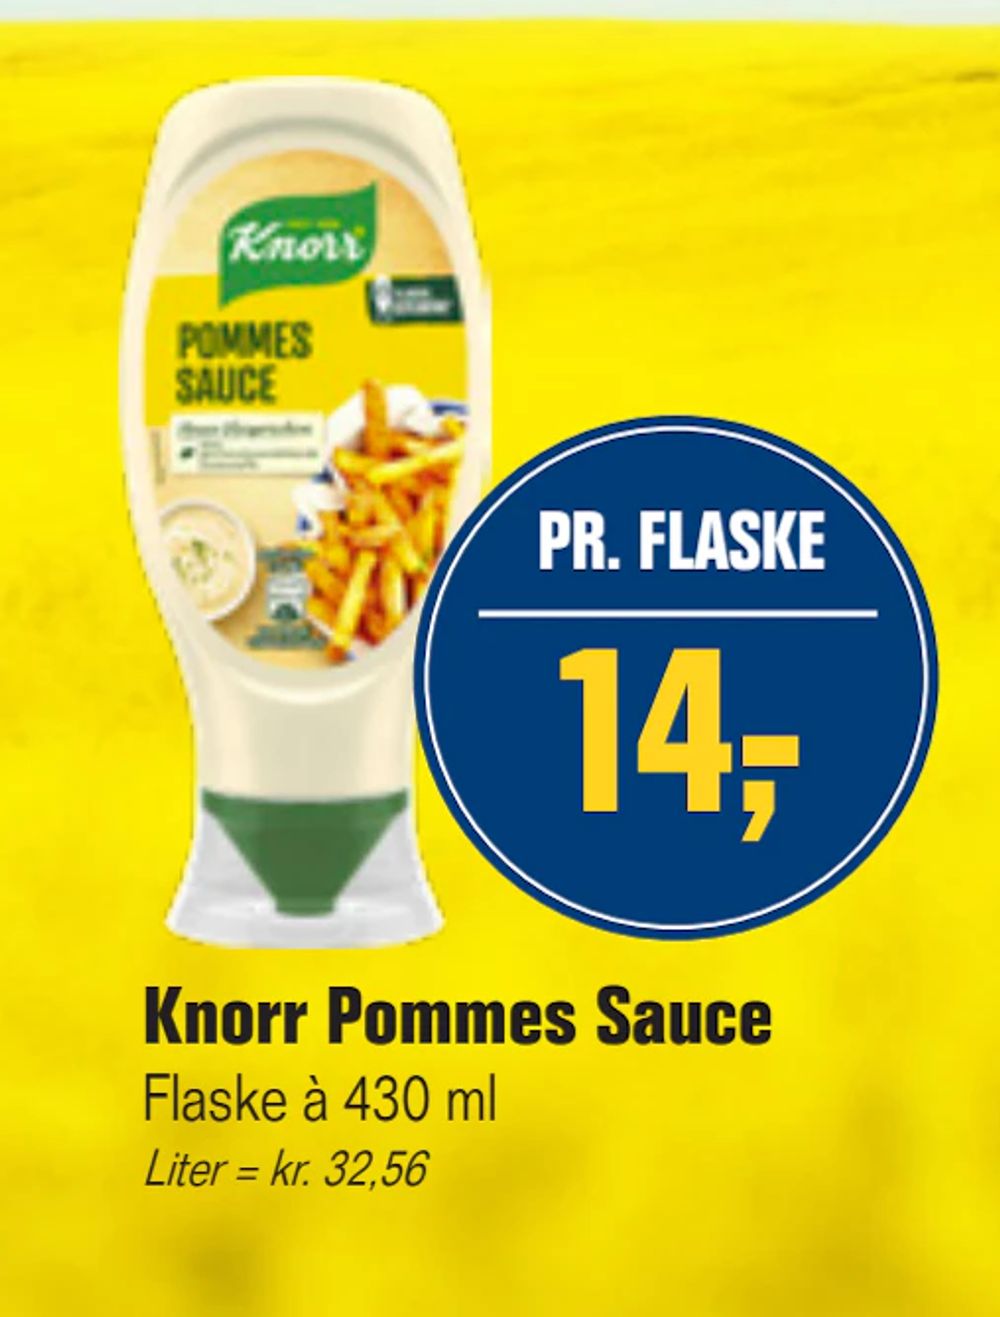 Tilbud på Knorr Pommes Sauce fra Otto Duborg til 14 kr.